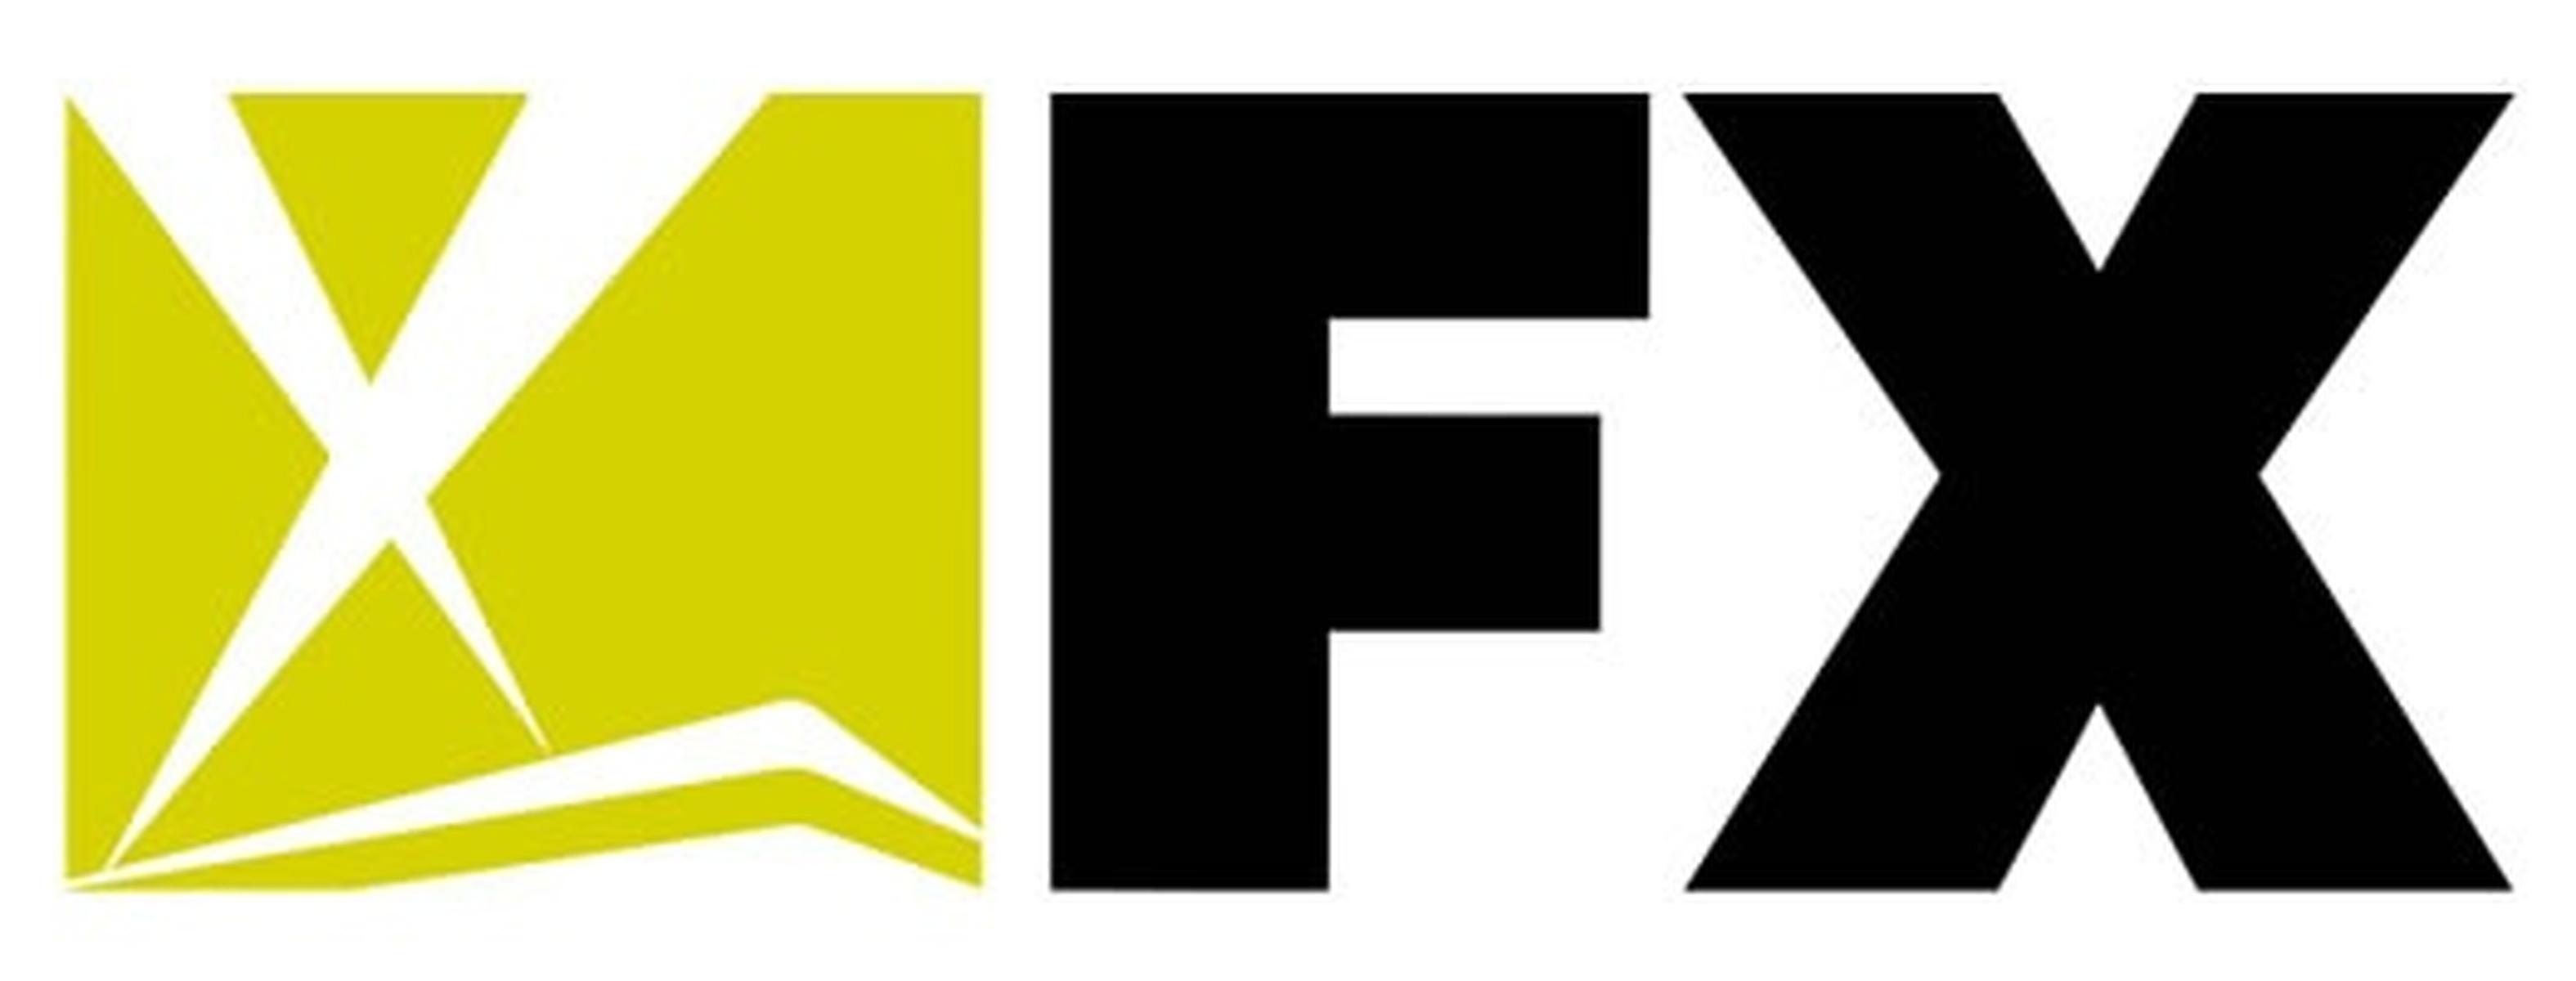 FX (United States), Logopedia